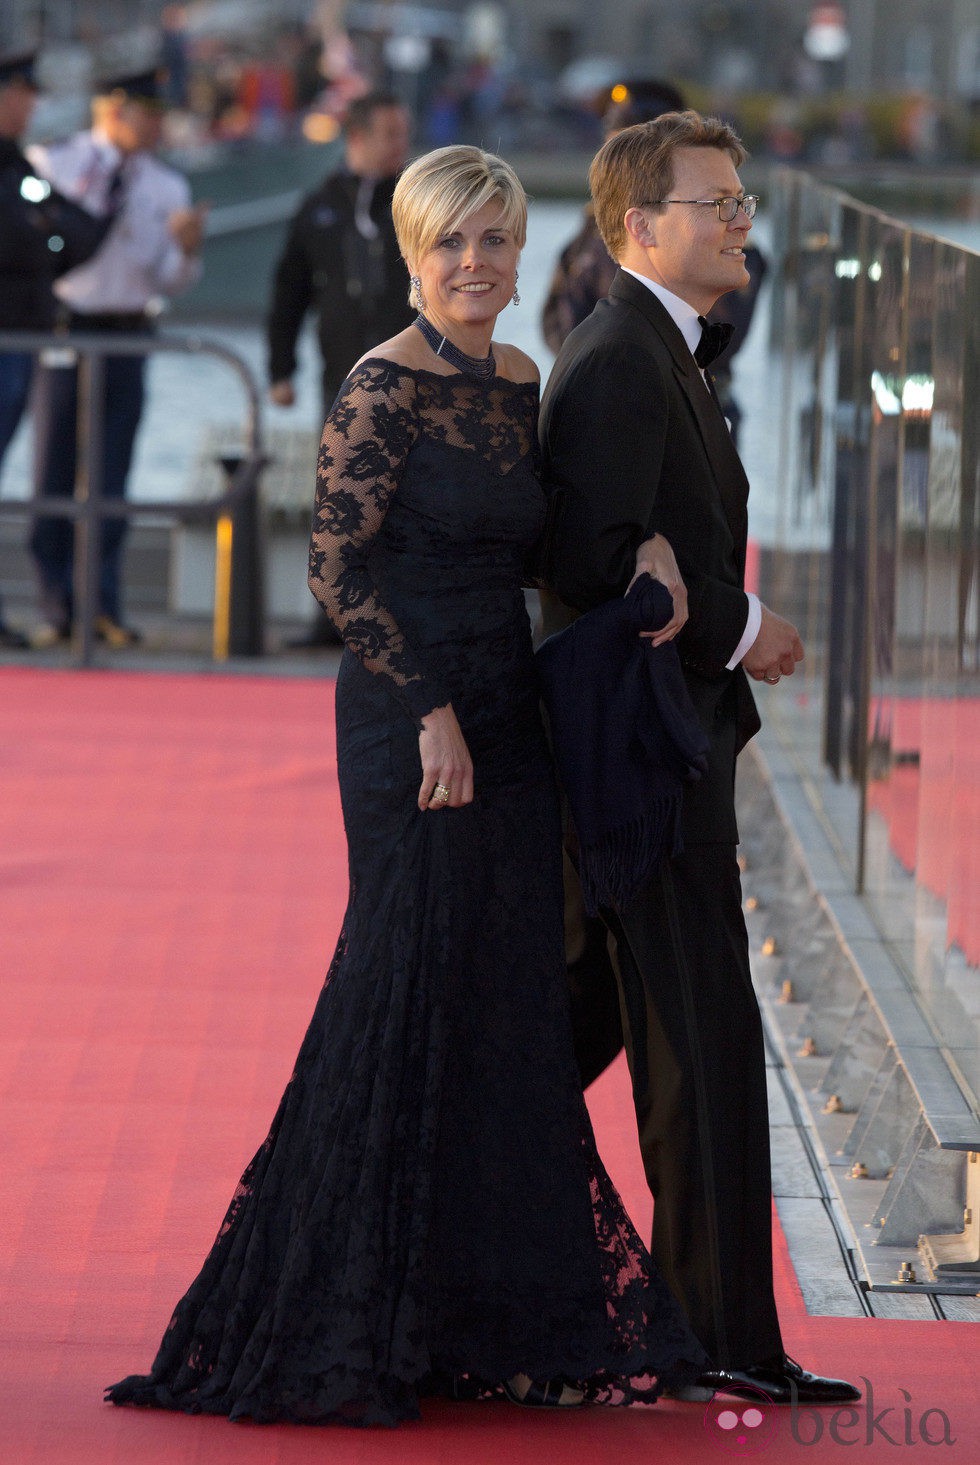 Laurentien de Holanda con un vestido largo negro en la cena de gala por la coronación de los Reyes de Holanda